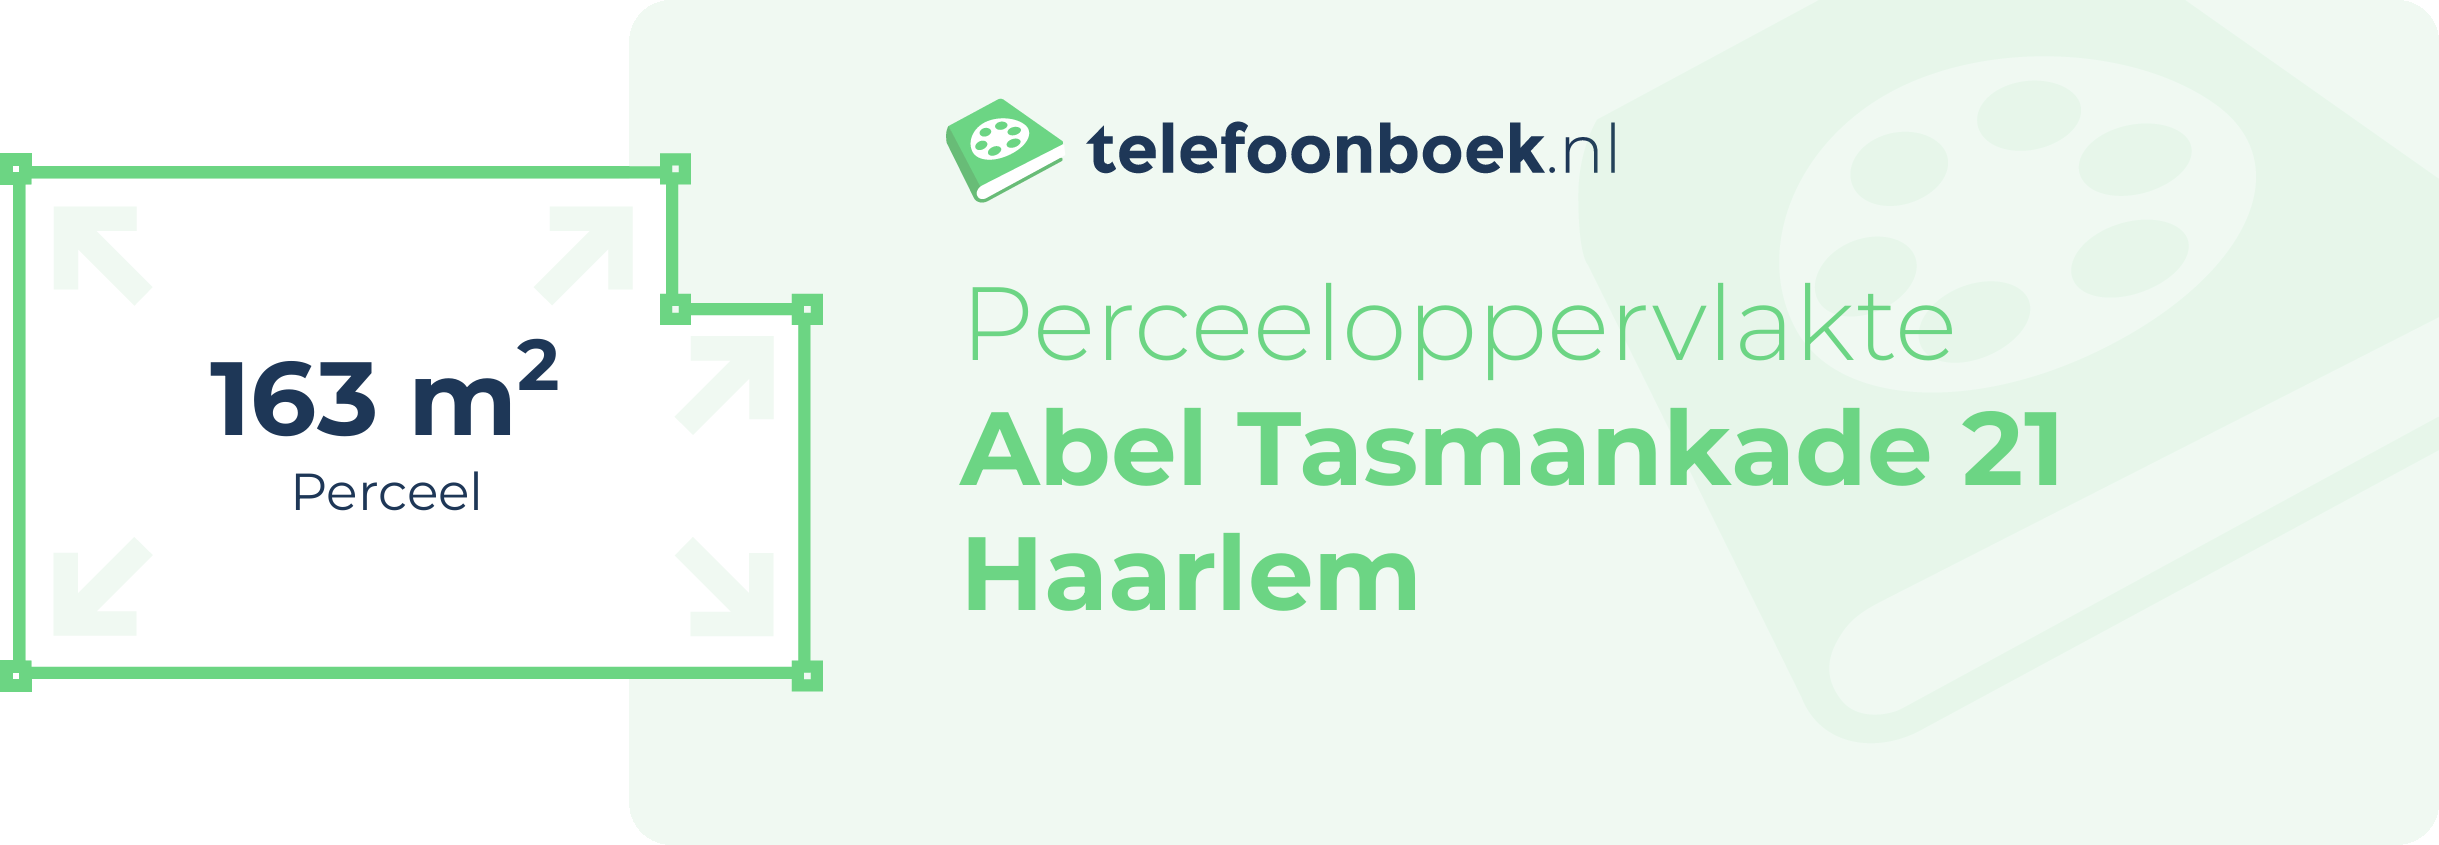 Perceeloppervlakte Abel Tasmankade 21 Haarlem